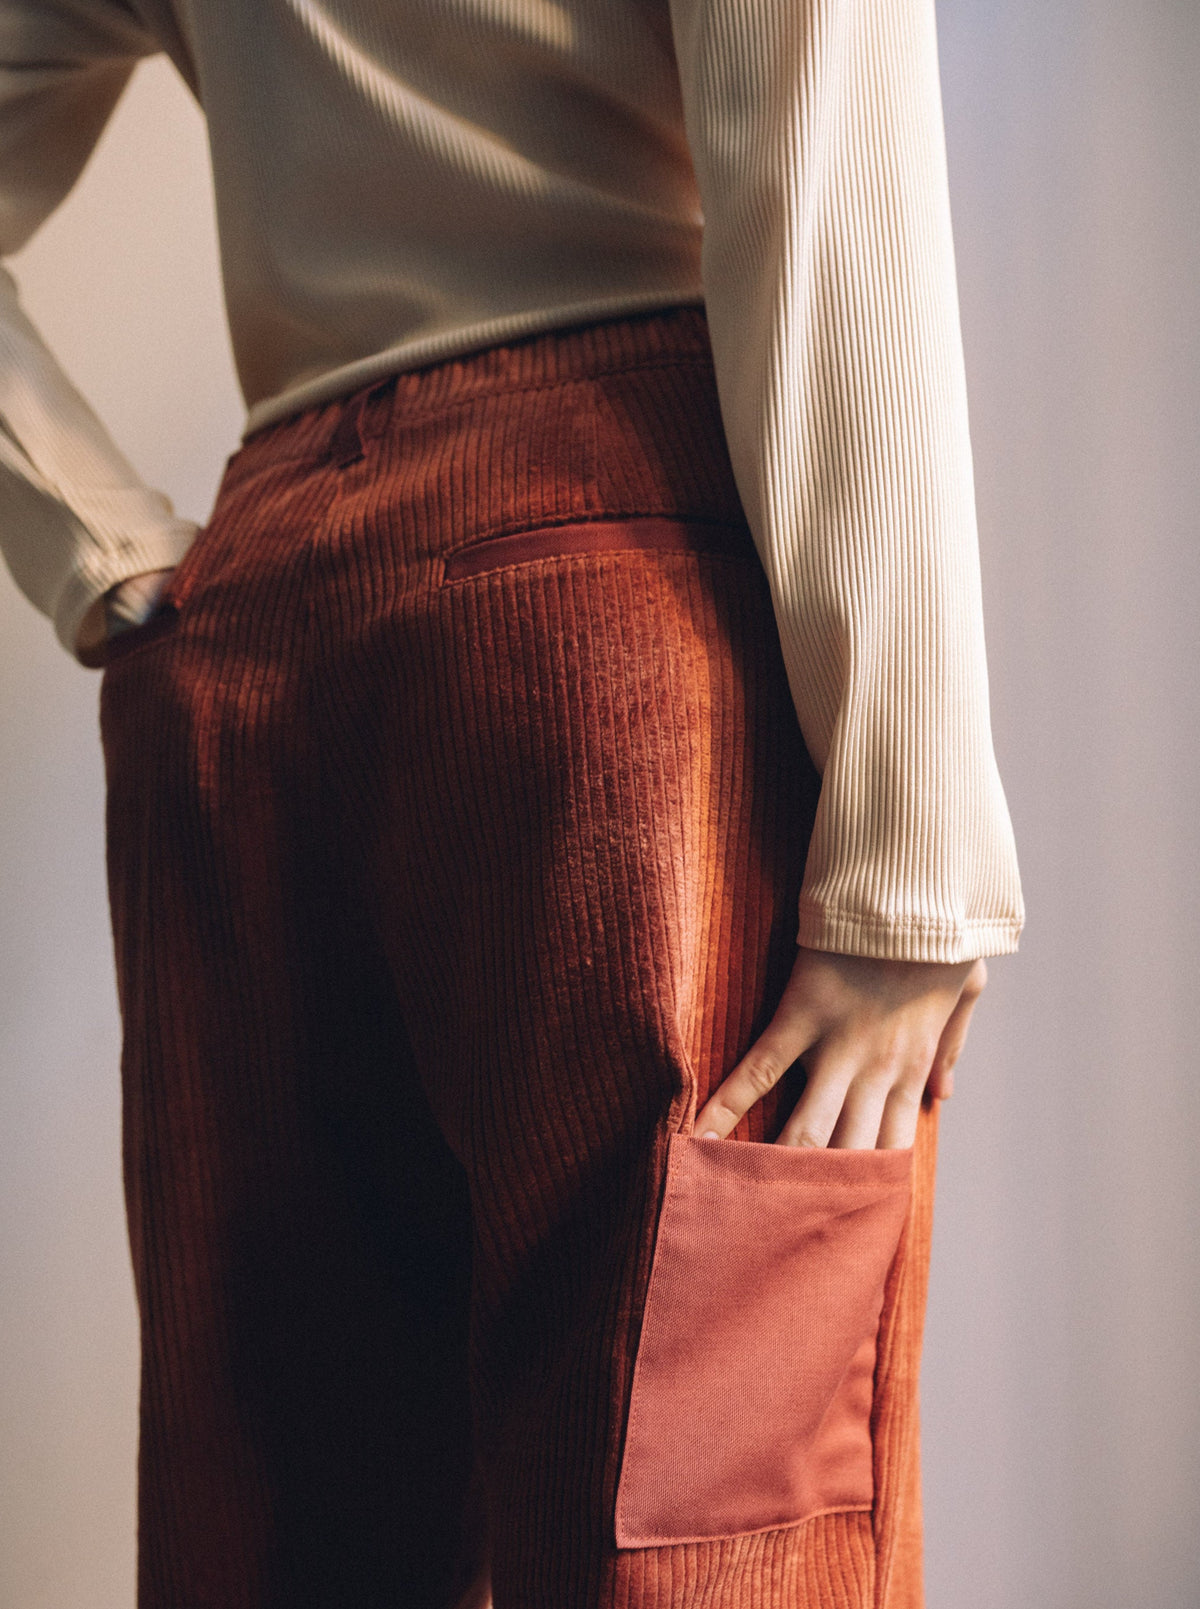 Terracotta women's trousers